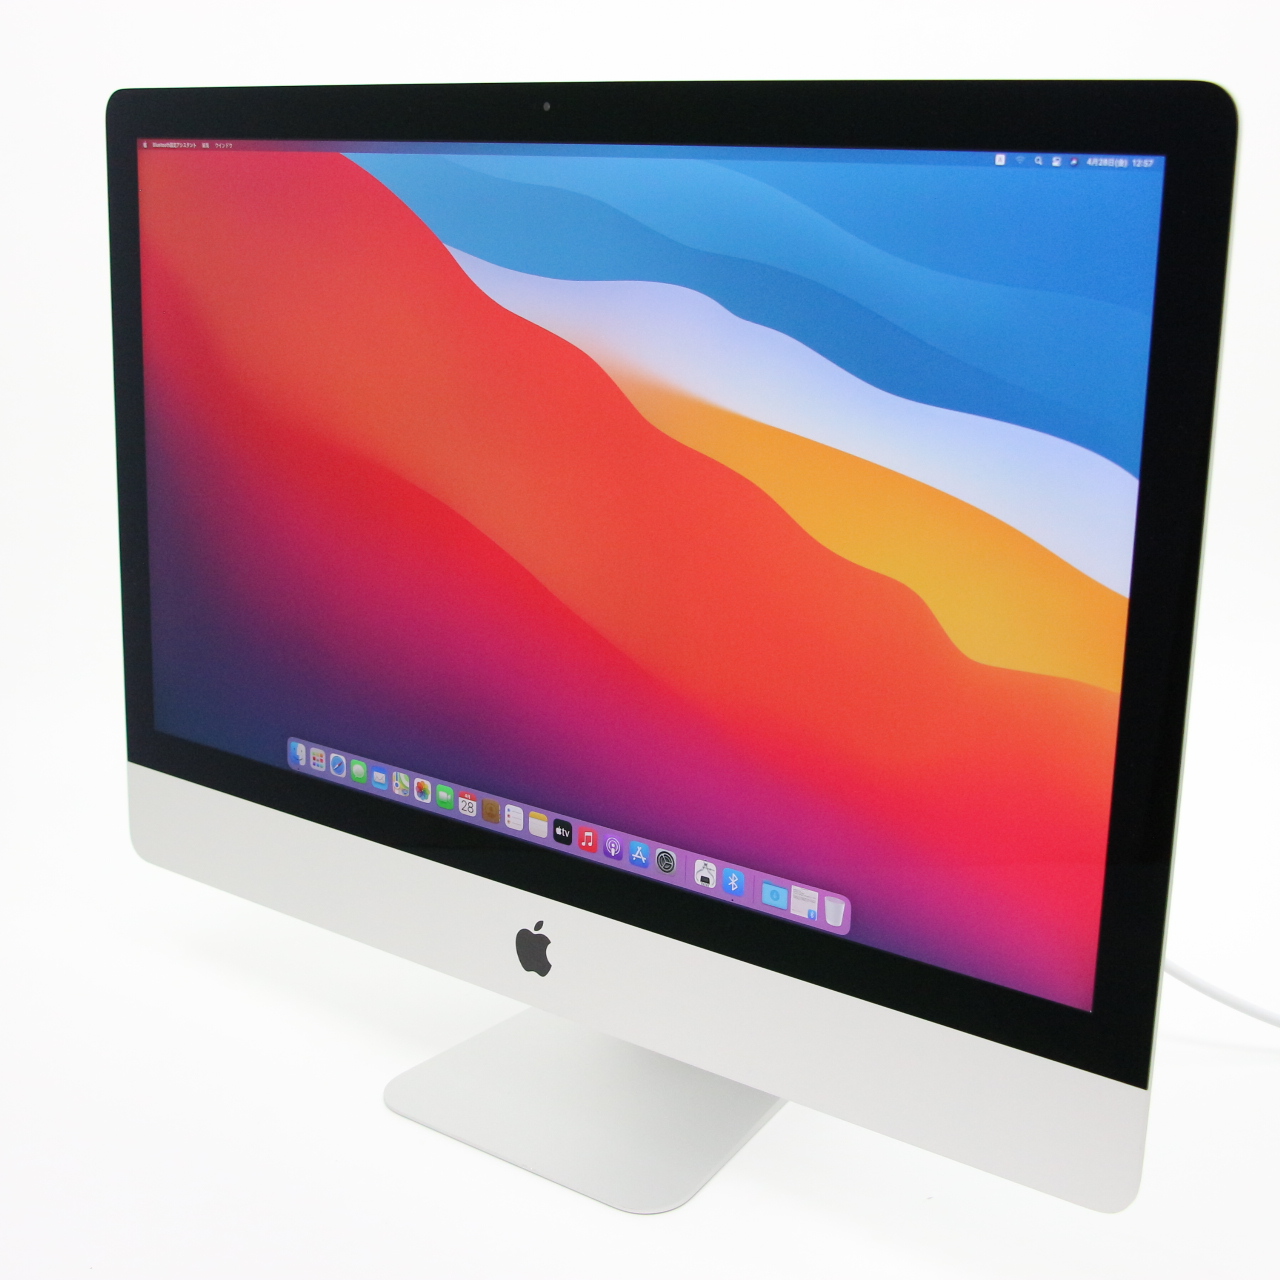 デスクトップパソコン/Mac デスクトップ - Mac/iMac/27 inch | PCガレージ | オリックス・レンテック株式会社